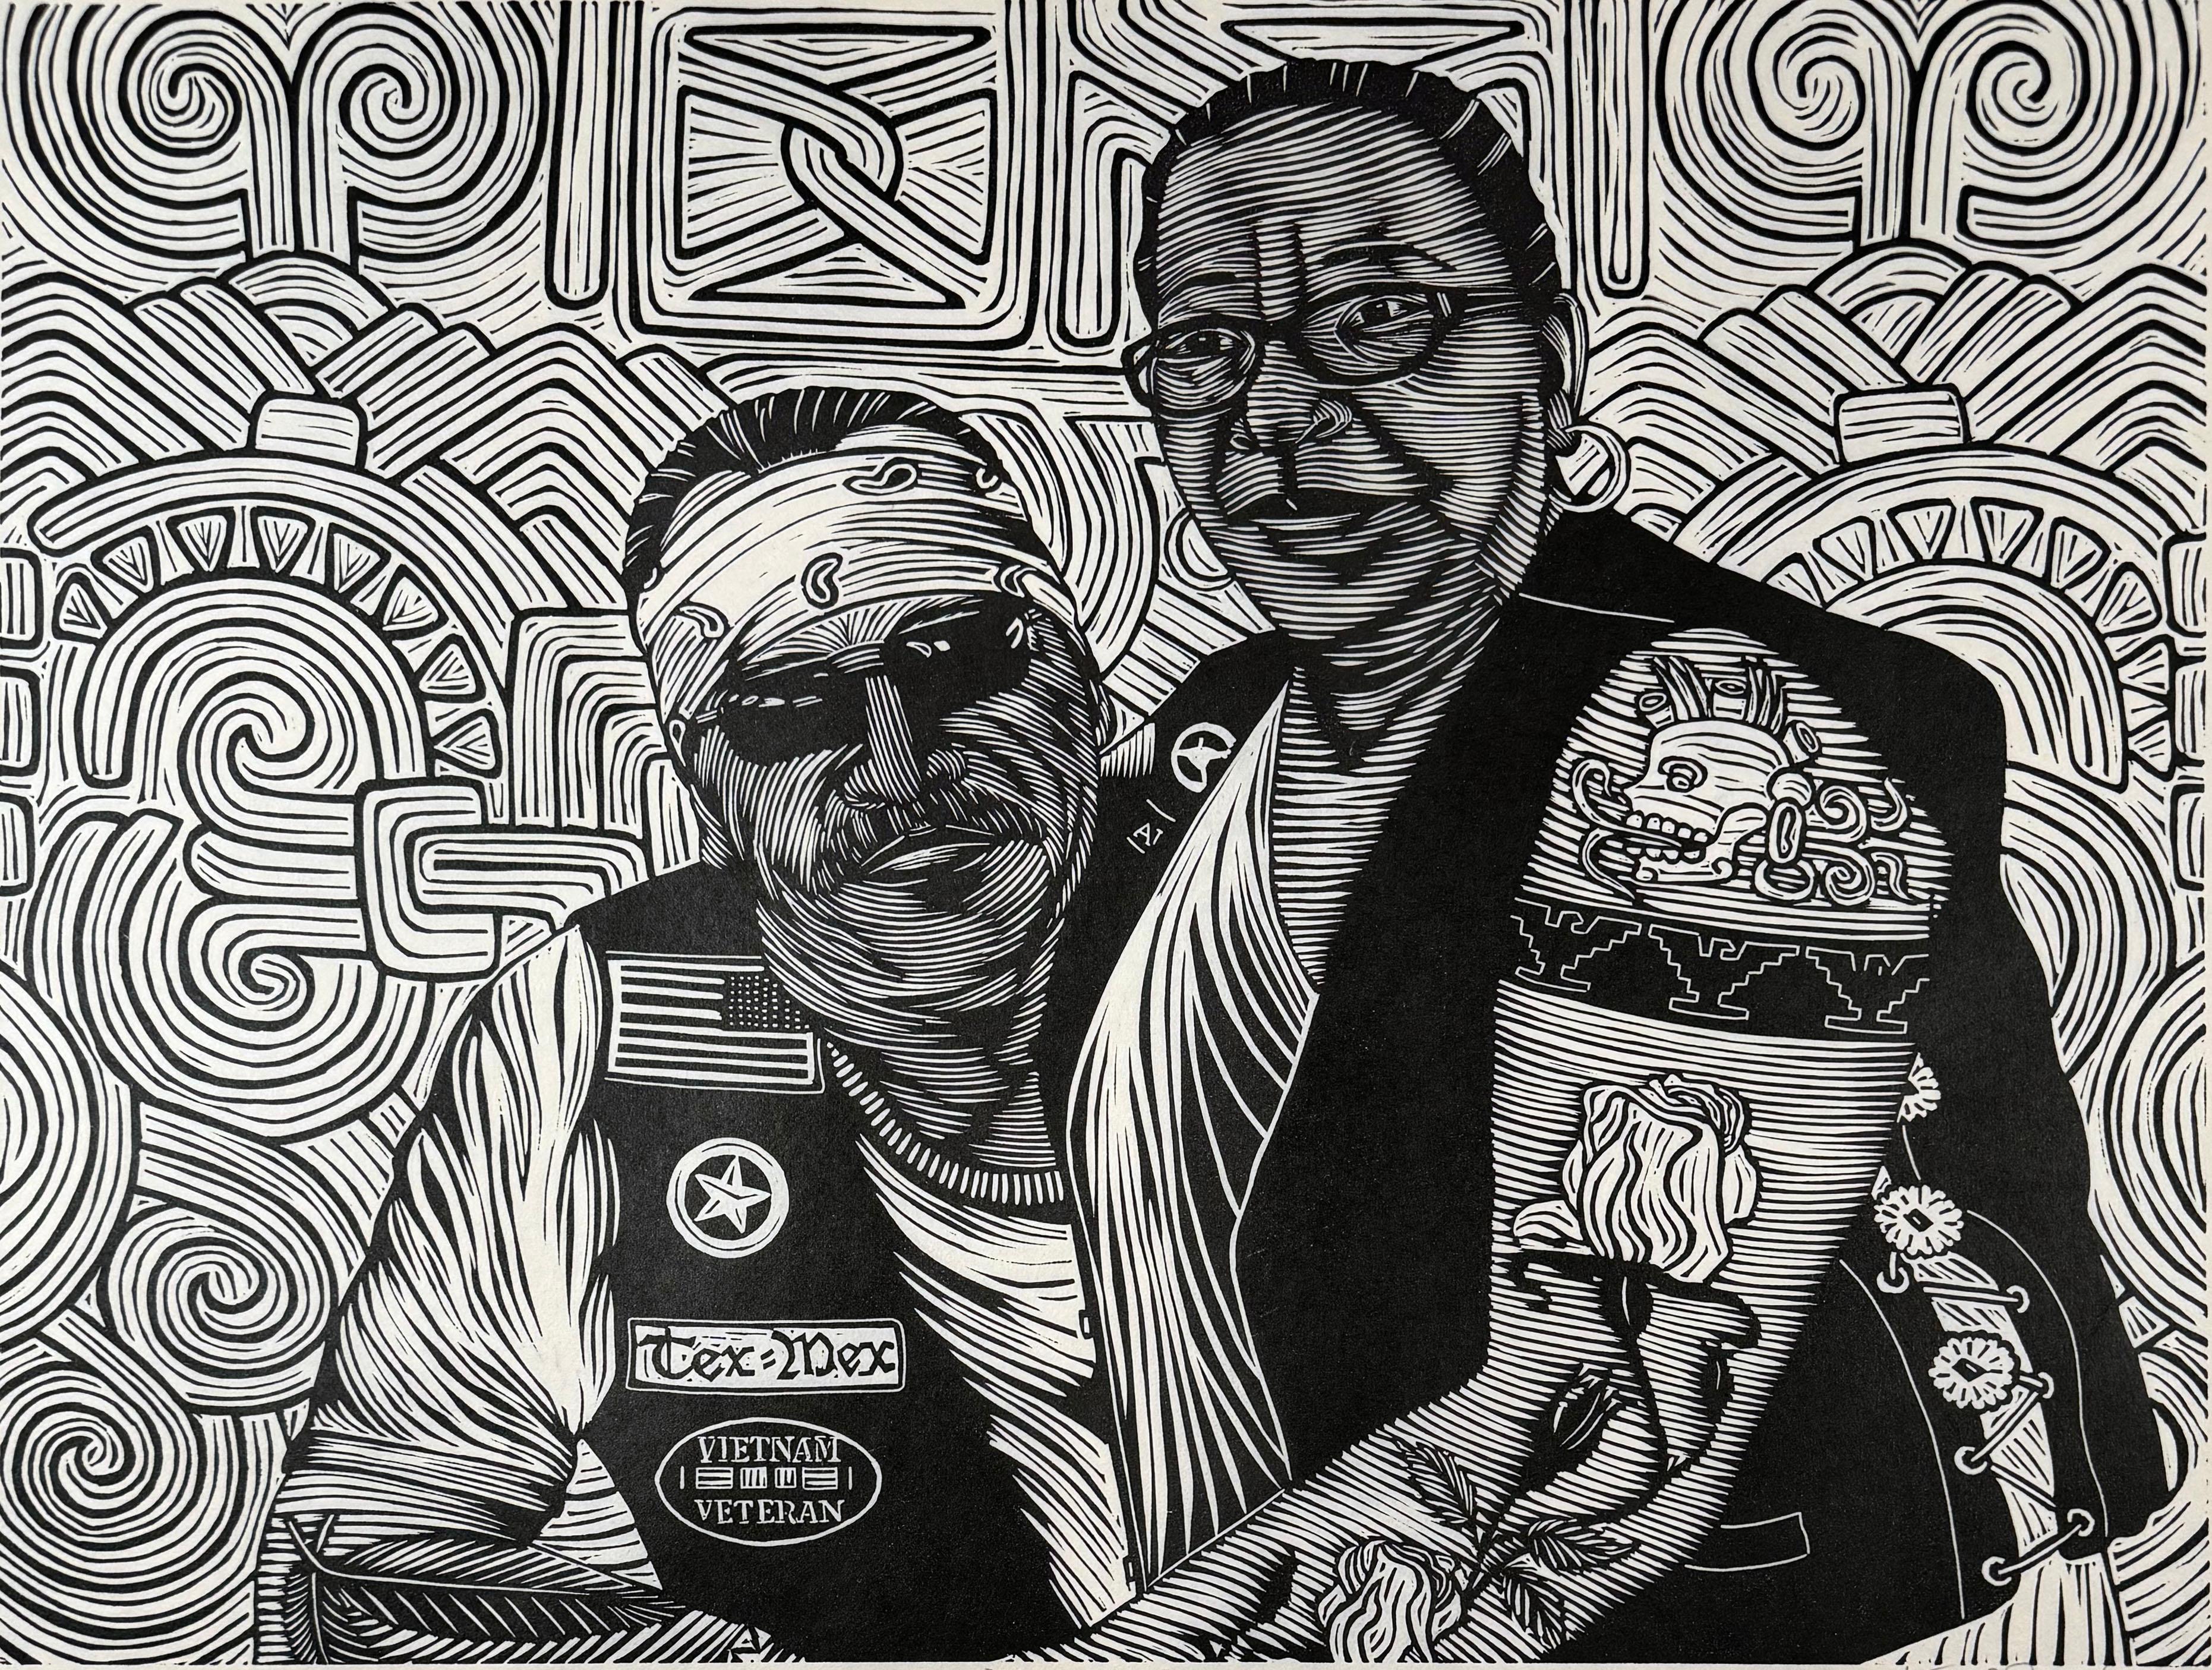 Medium: Linolschnitt
Jahr: 2023
Bildgröße: 18 x 24 Zoll
Auflagenhöhe: 10

Tätowiertes Chicano-Paar mit Emblemen von Aztlan und den Vereinigten Staaten.

Als Kulturaktivist, Künstler und Grafiker hat Juan Fuentes seine Karriere dem Ziel gewidmet,